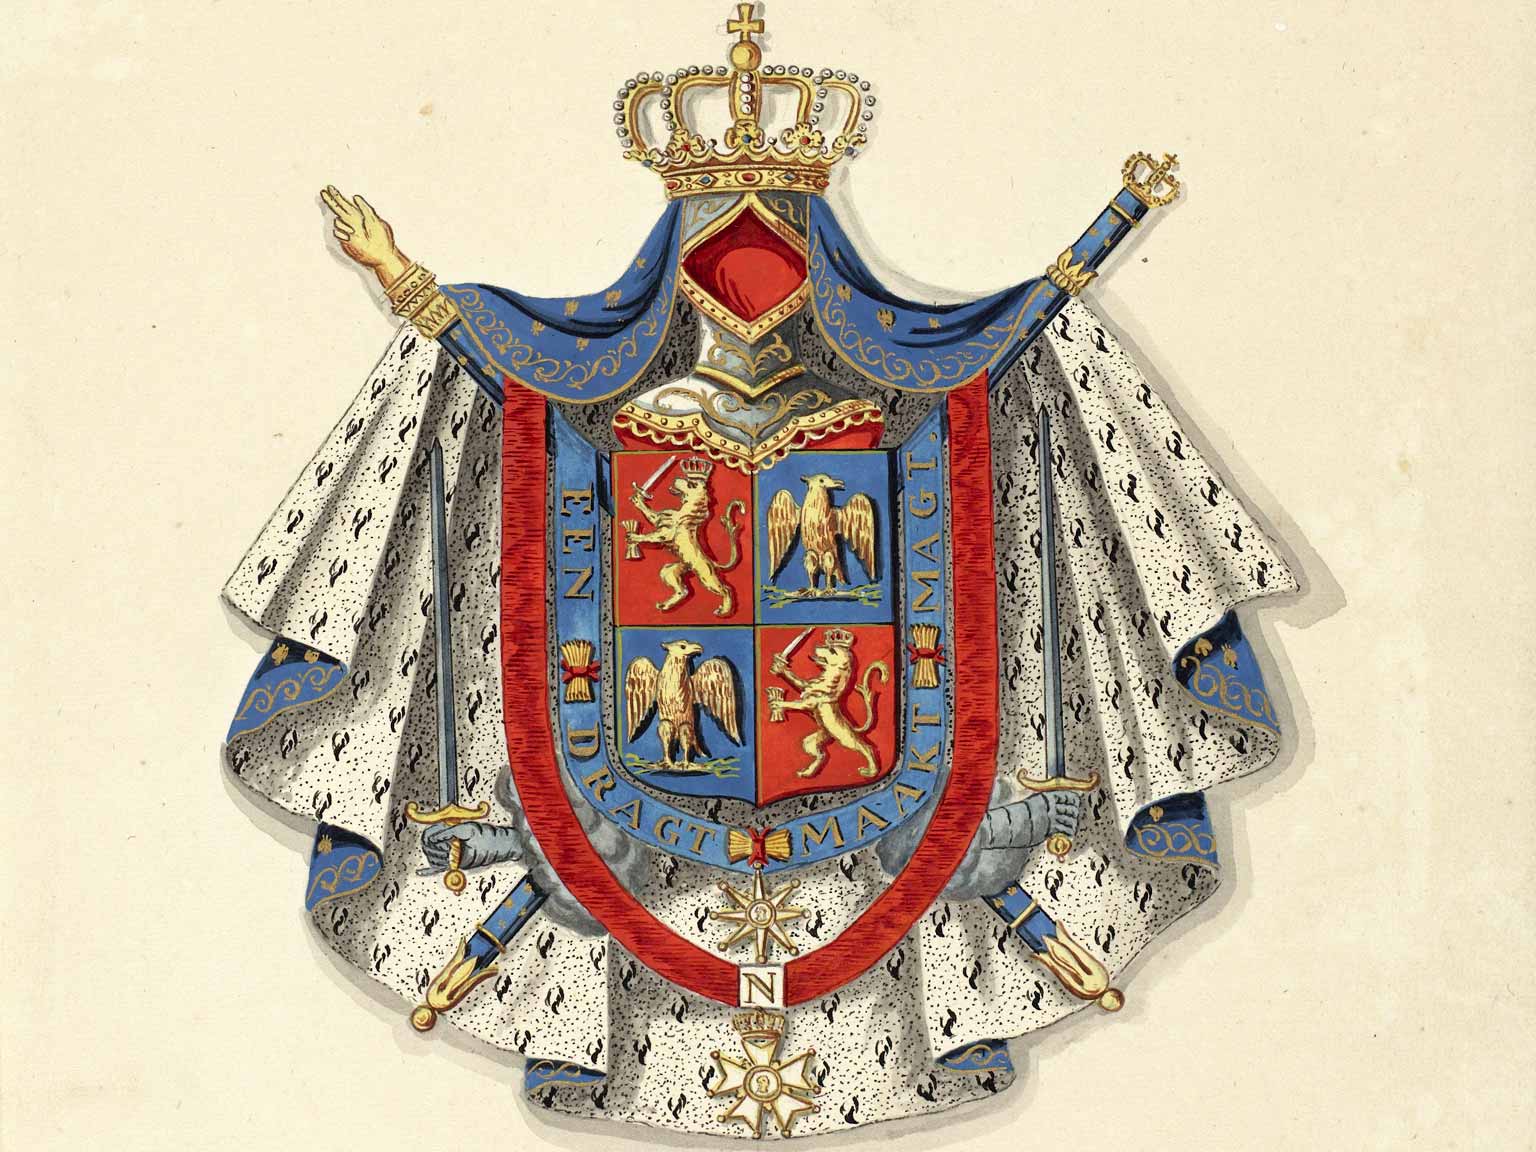 Wapenschild van Lodewijk Napoleon, Koning van Holland